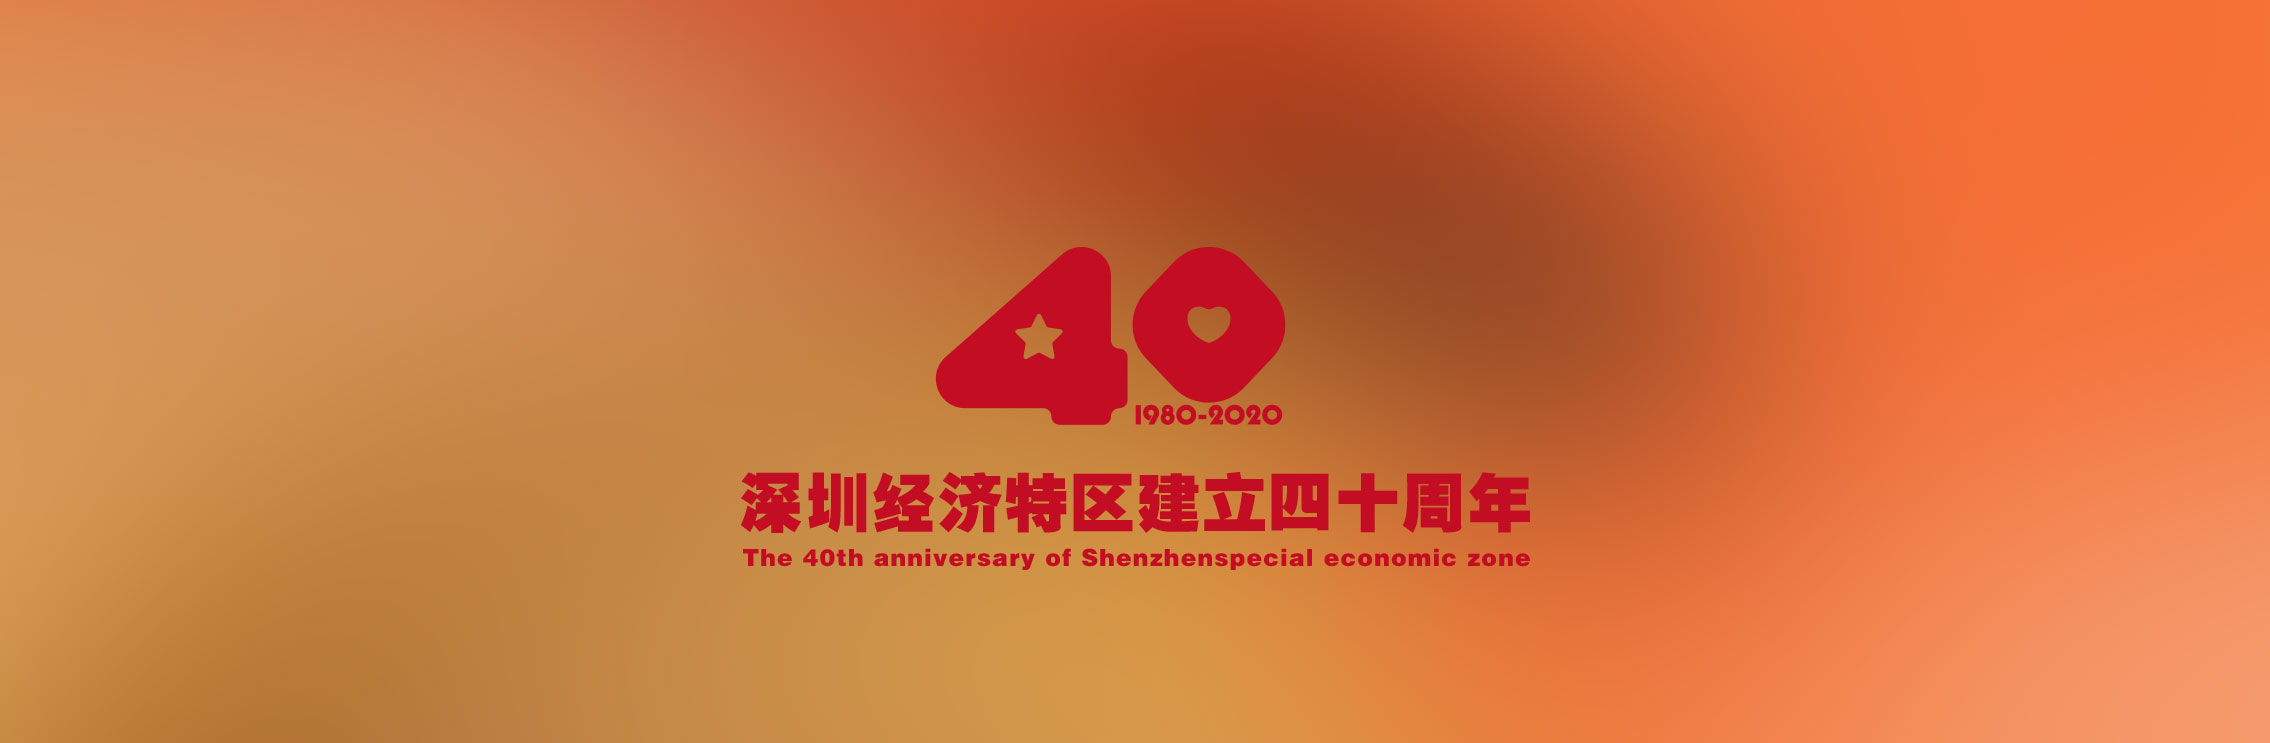 深圳40周年庆典图片